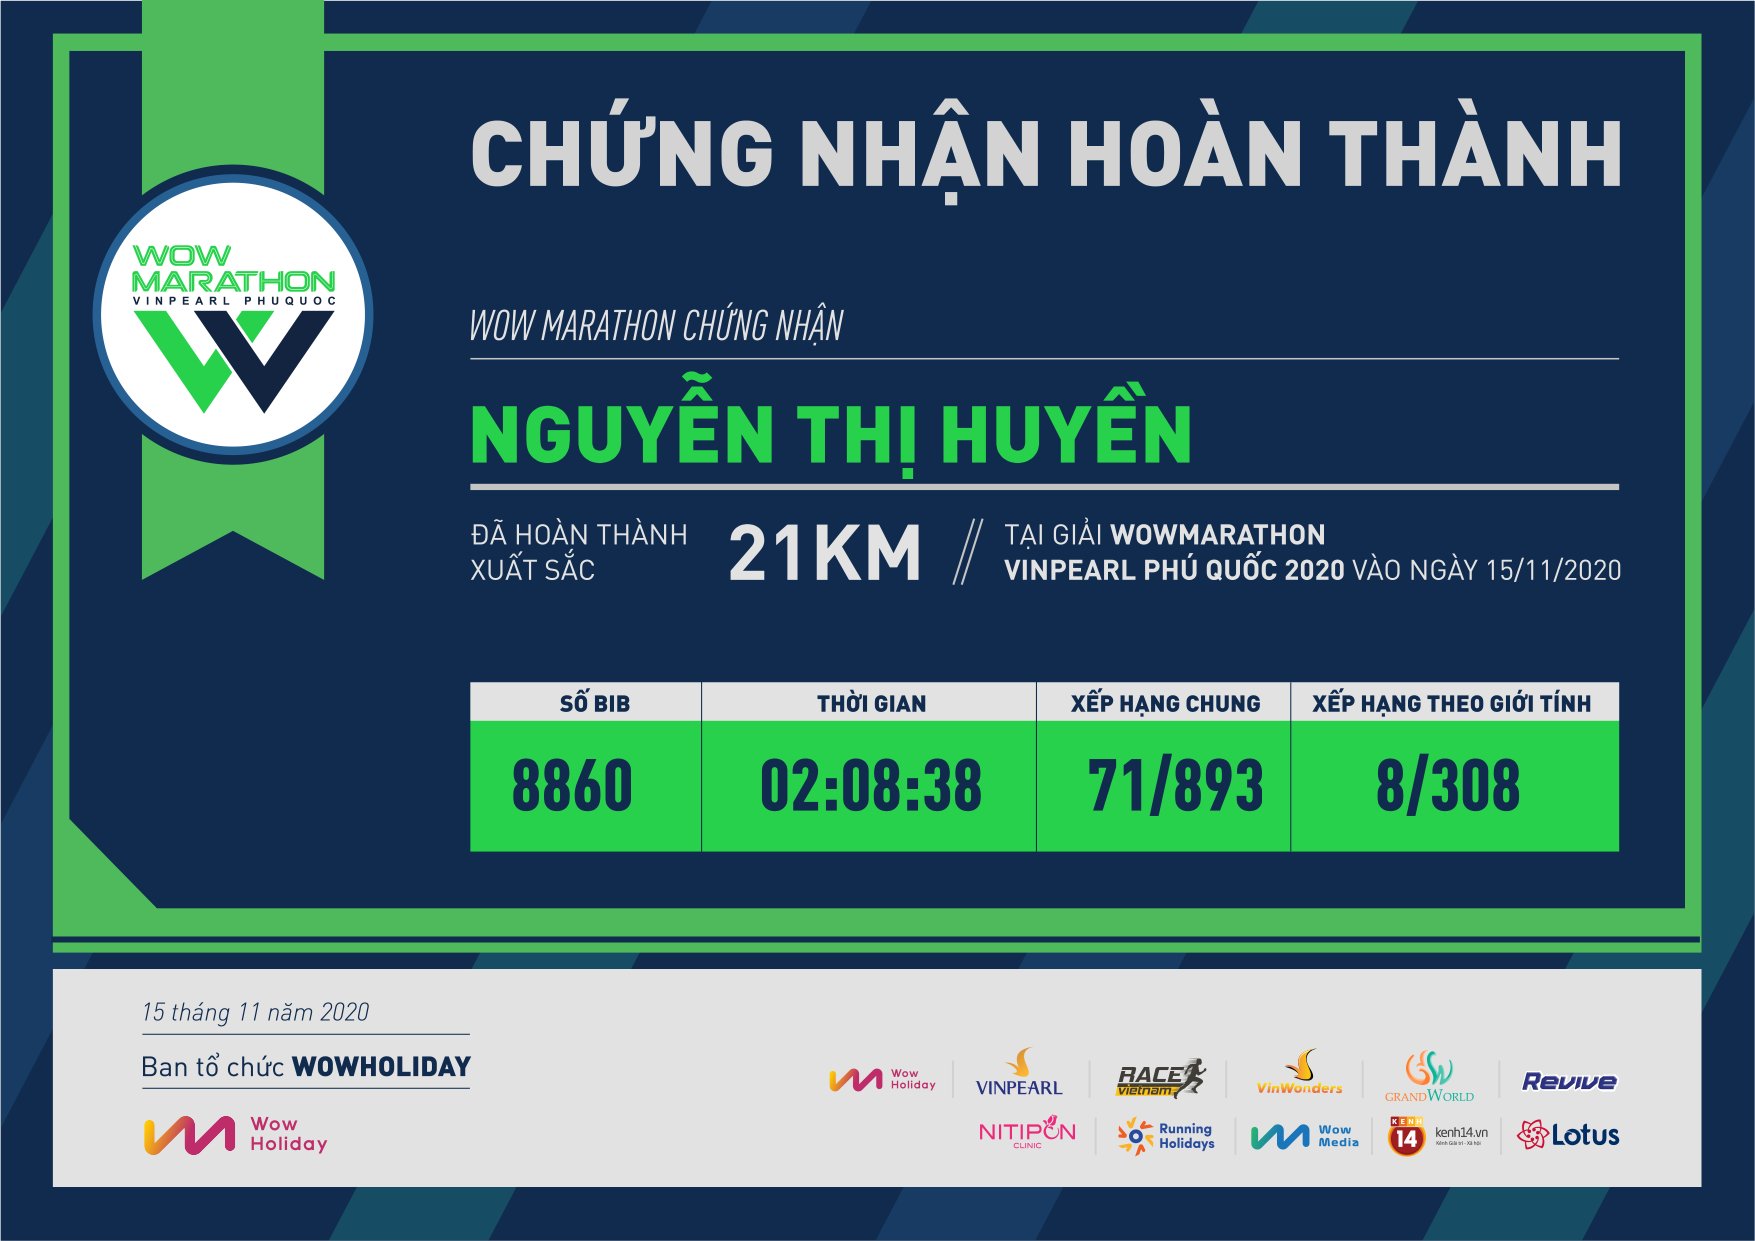 8860 - Nguyễn Thị Huyền